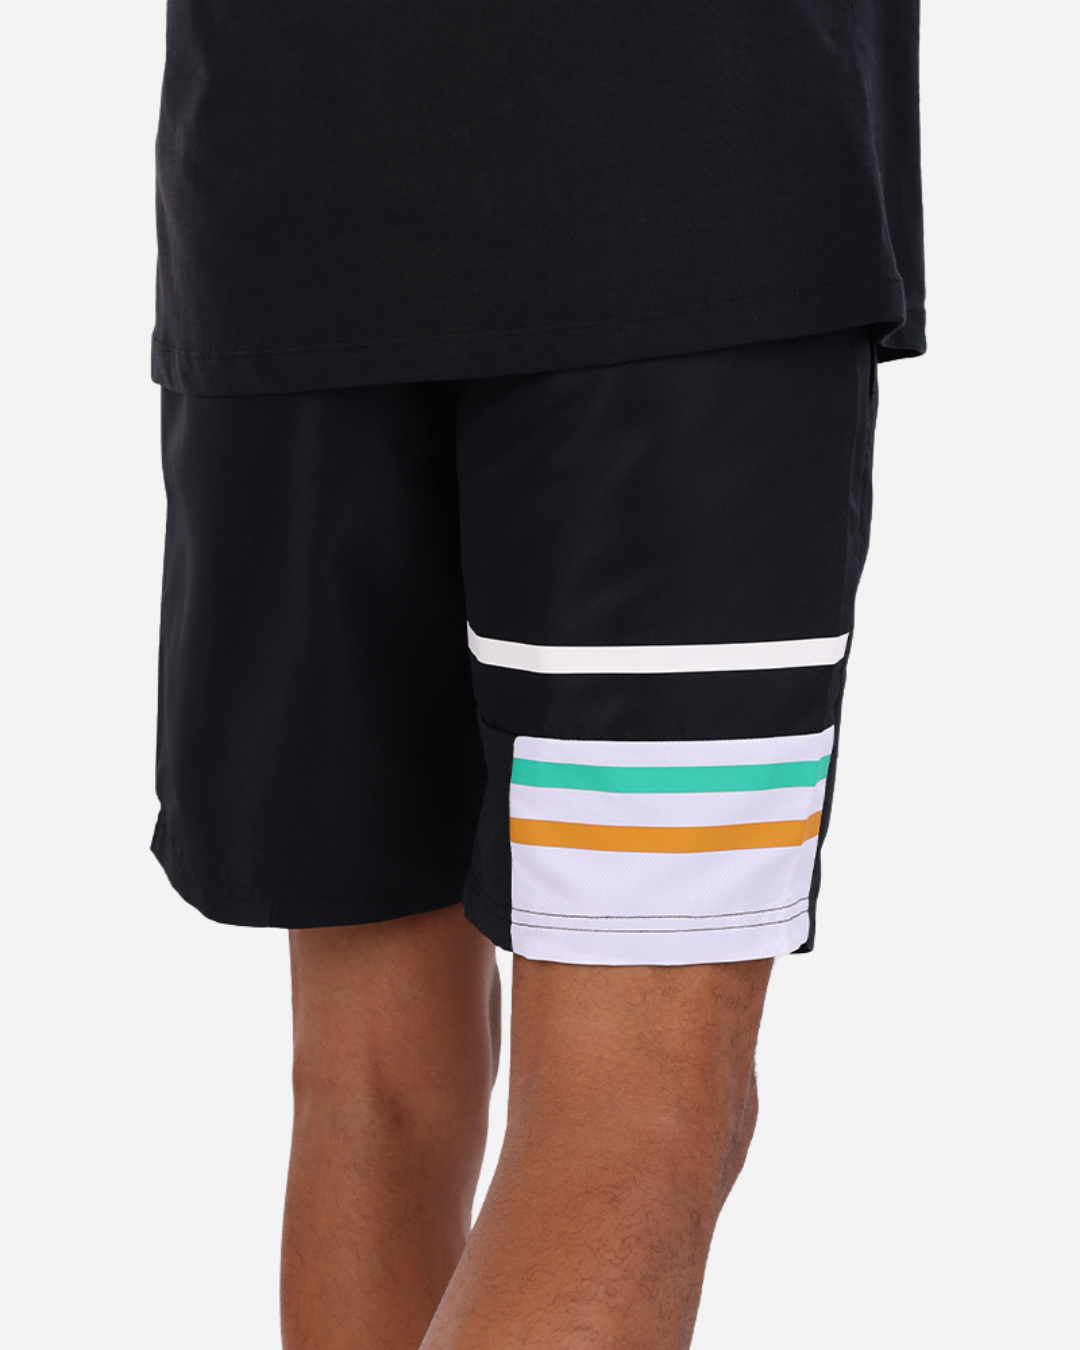 Sergio Tacchini Plug In Shorts - Black/White/Green